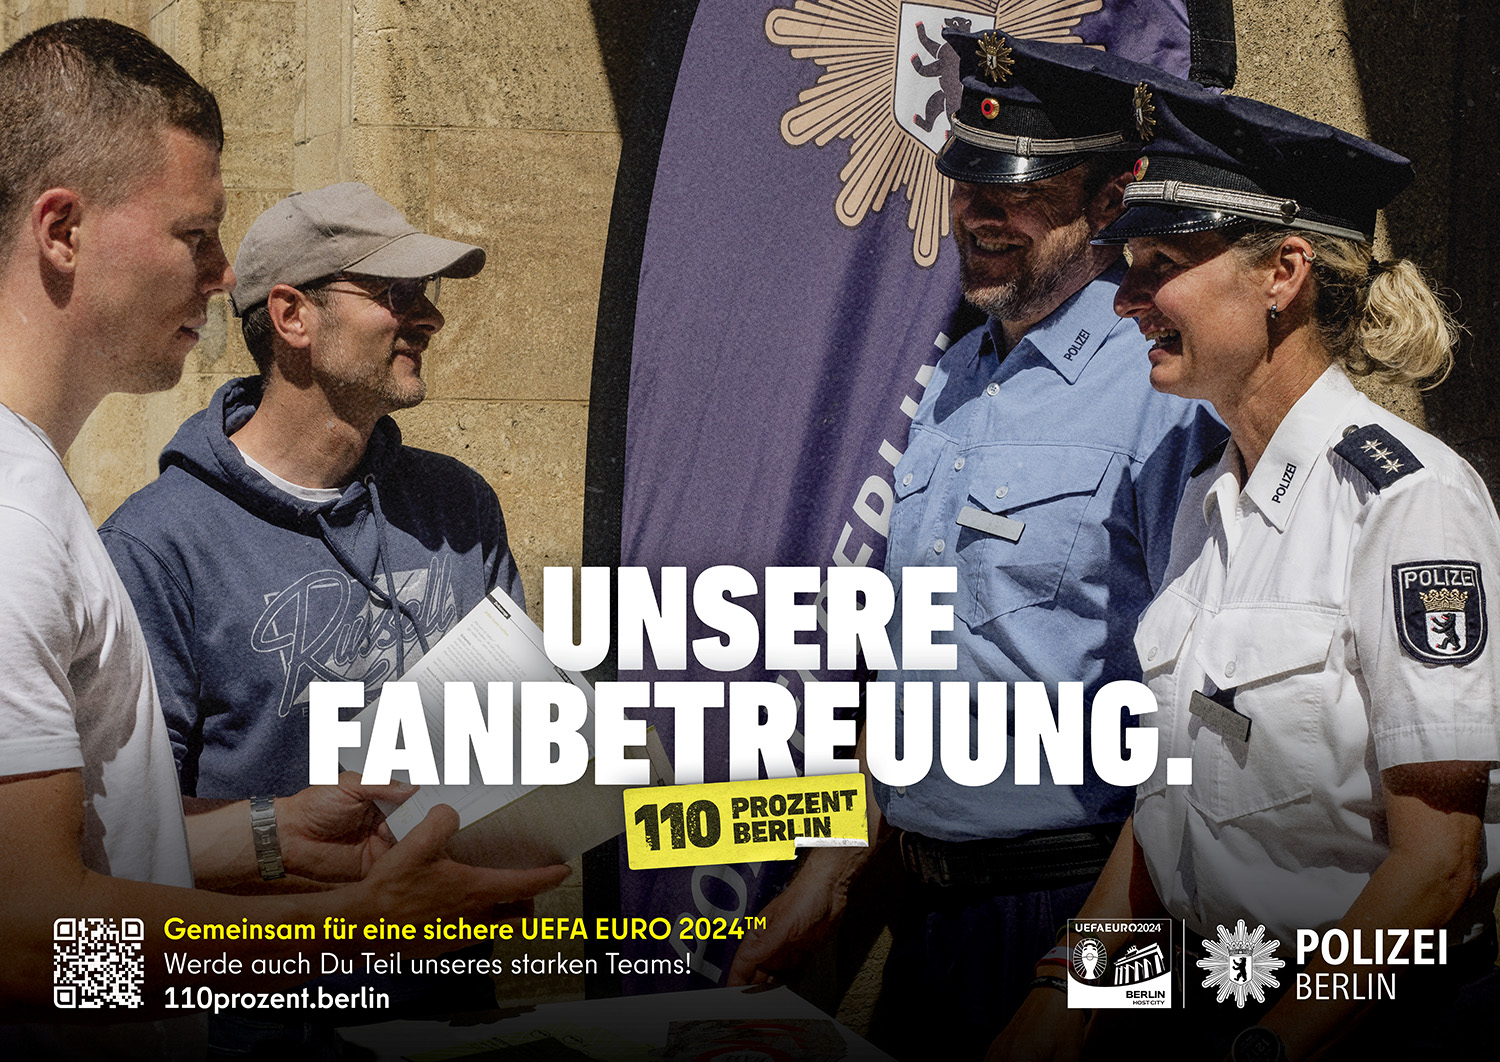 Polizei Berlin - Unsere Fanbetreuung